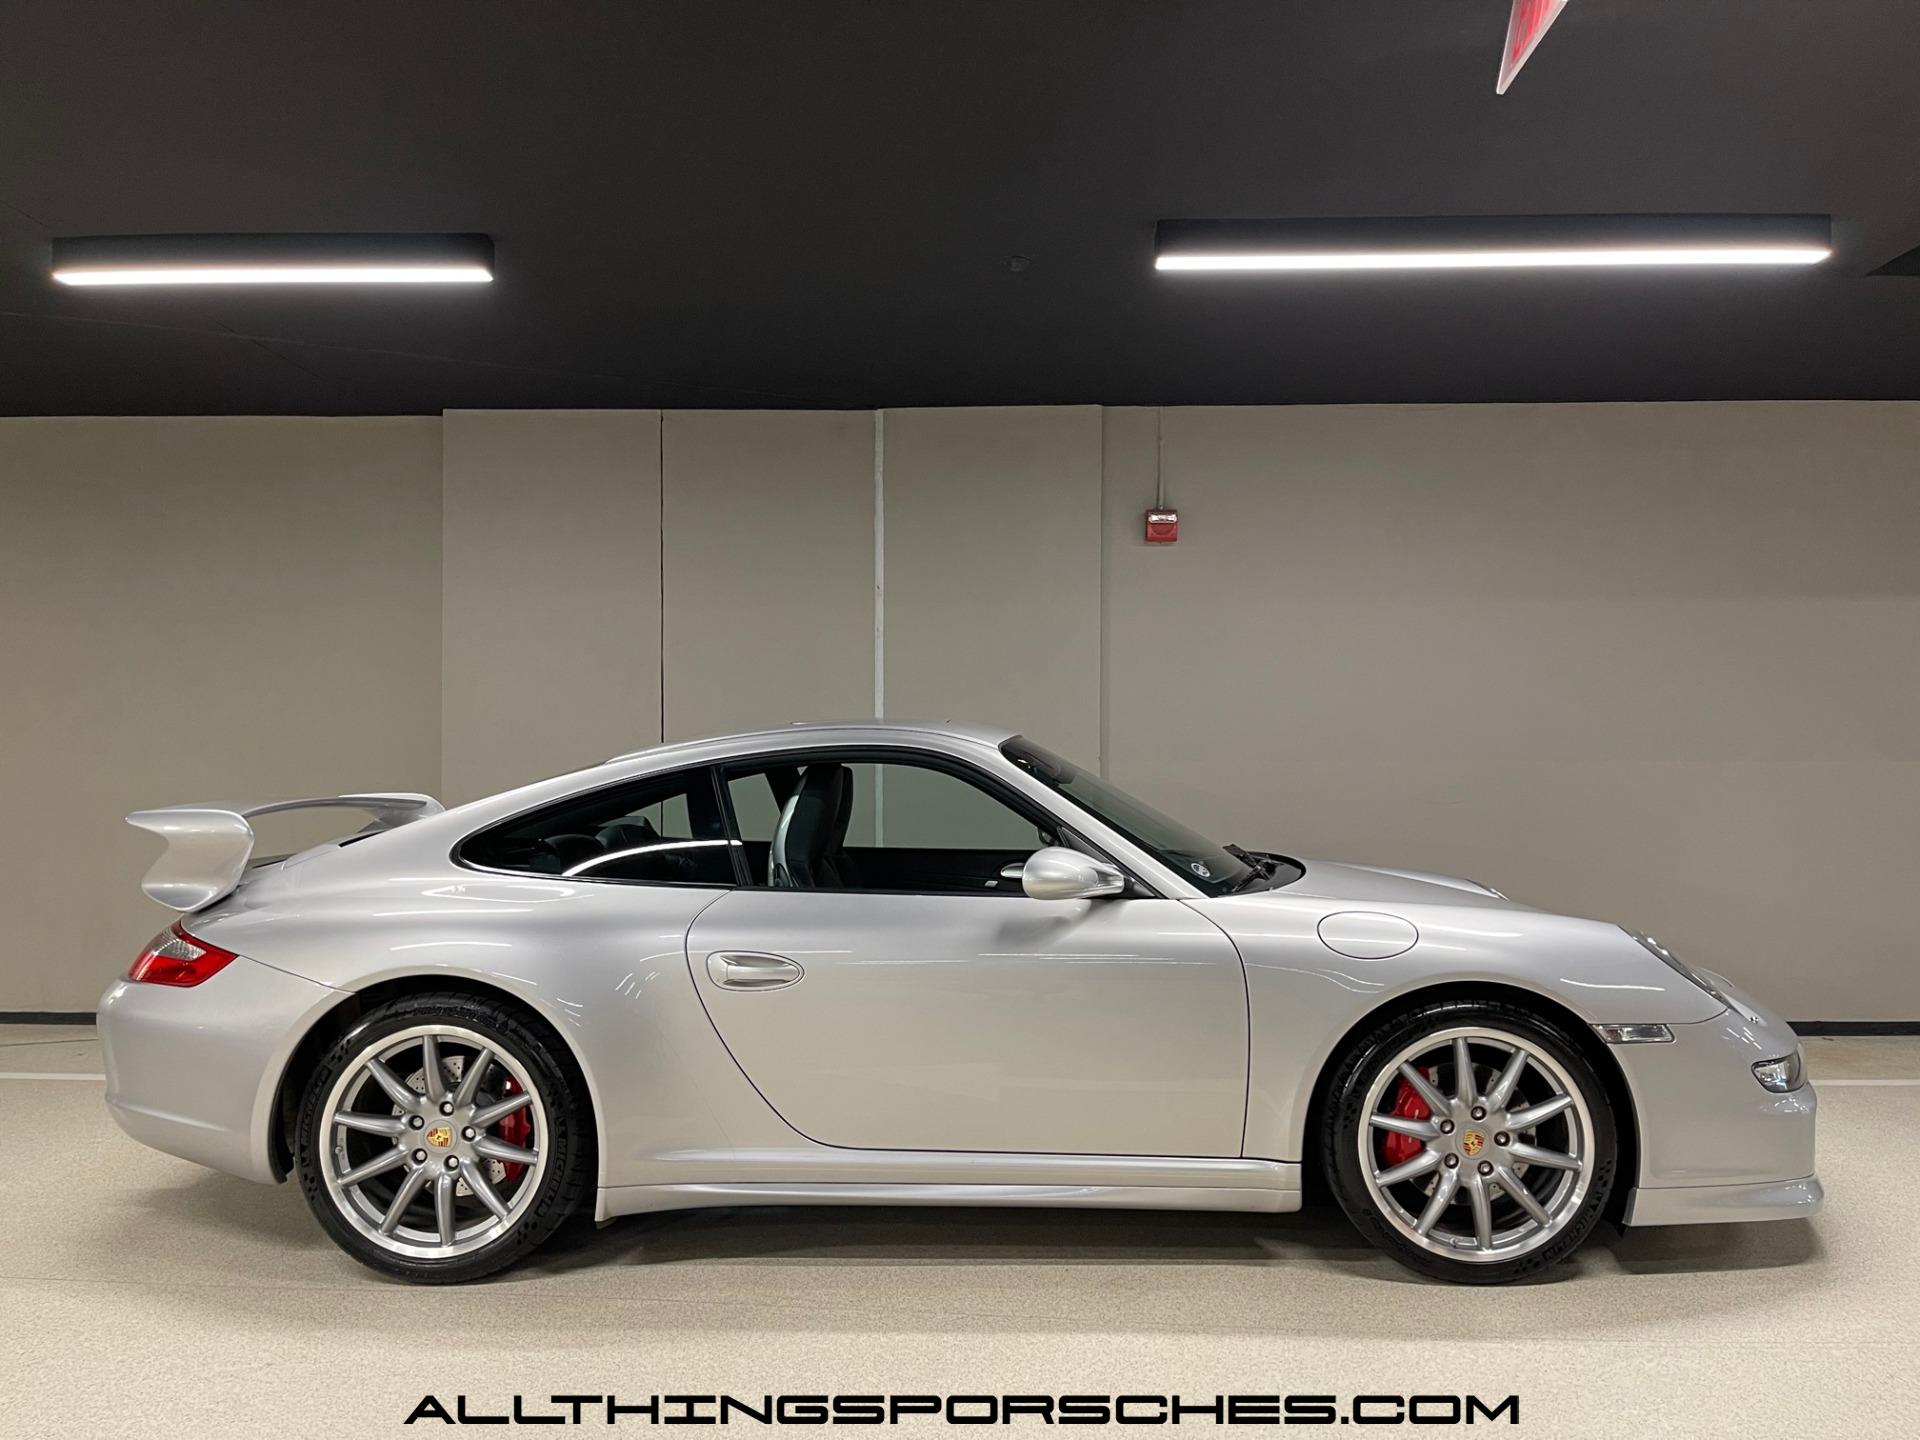 2008 Porsche 911 Carrera 4S Stock # 2651 for sale near North Miami Beach,  FL. Specialize In Porsches